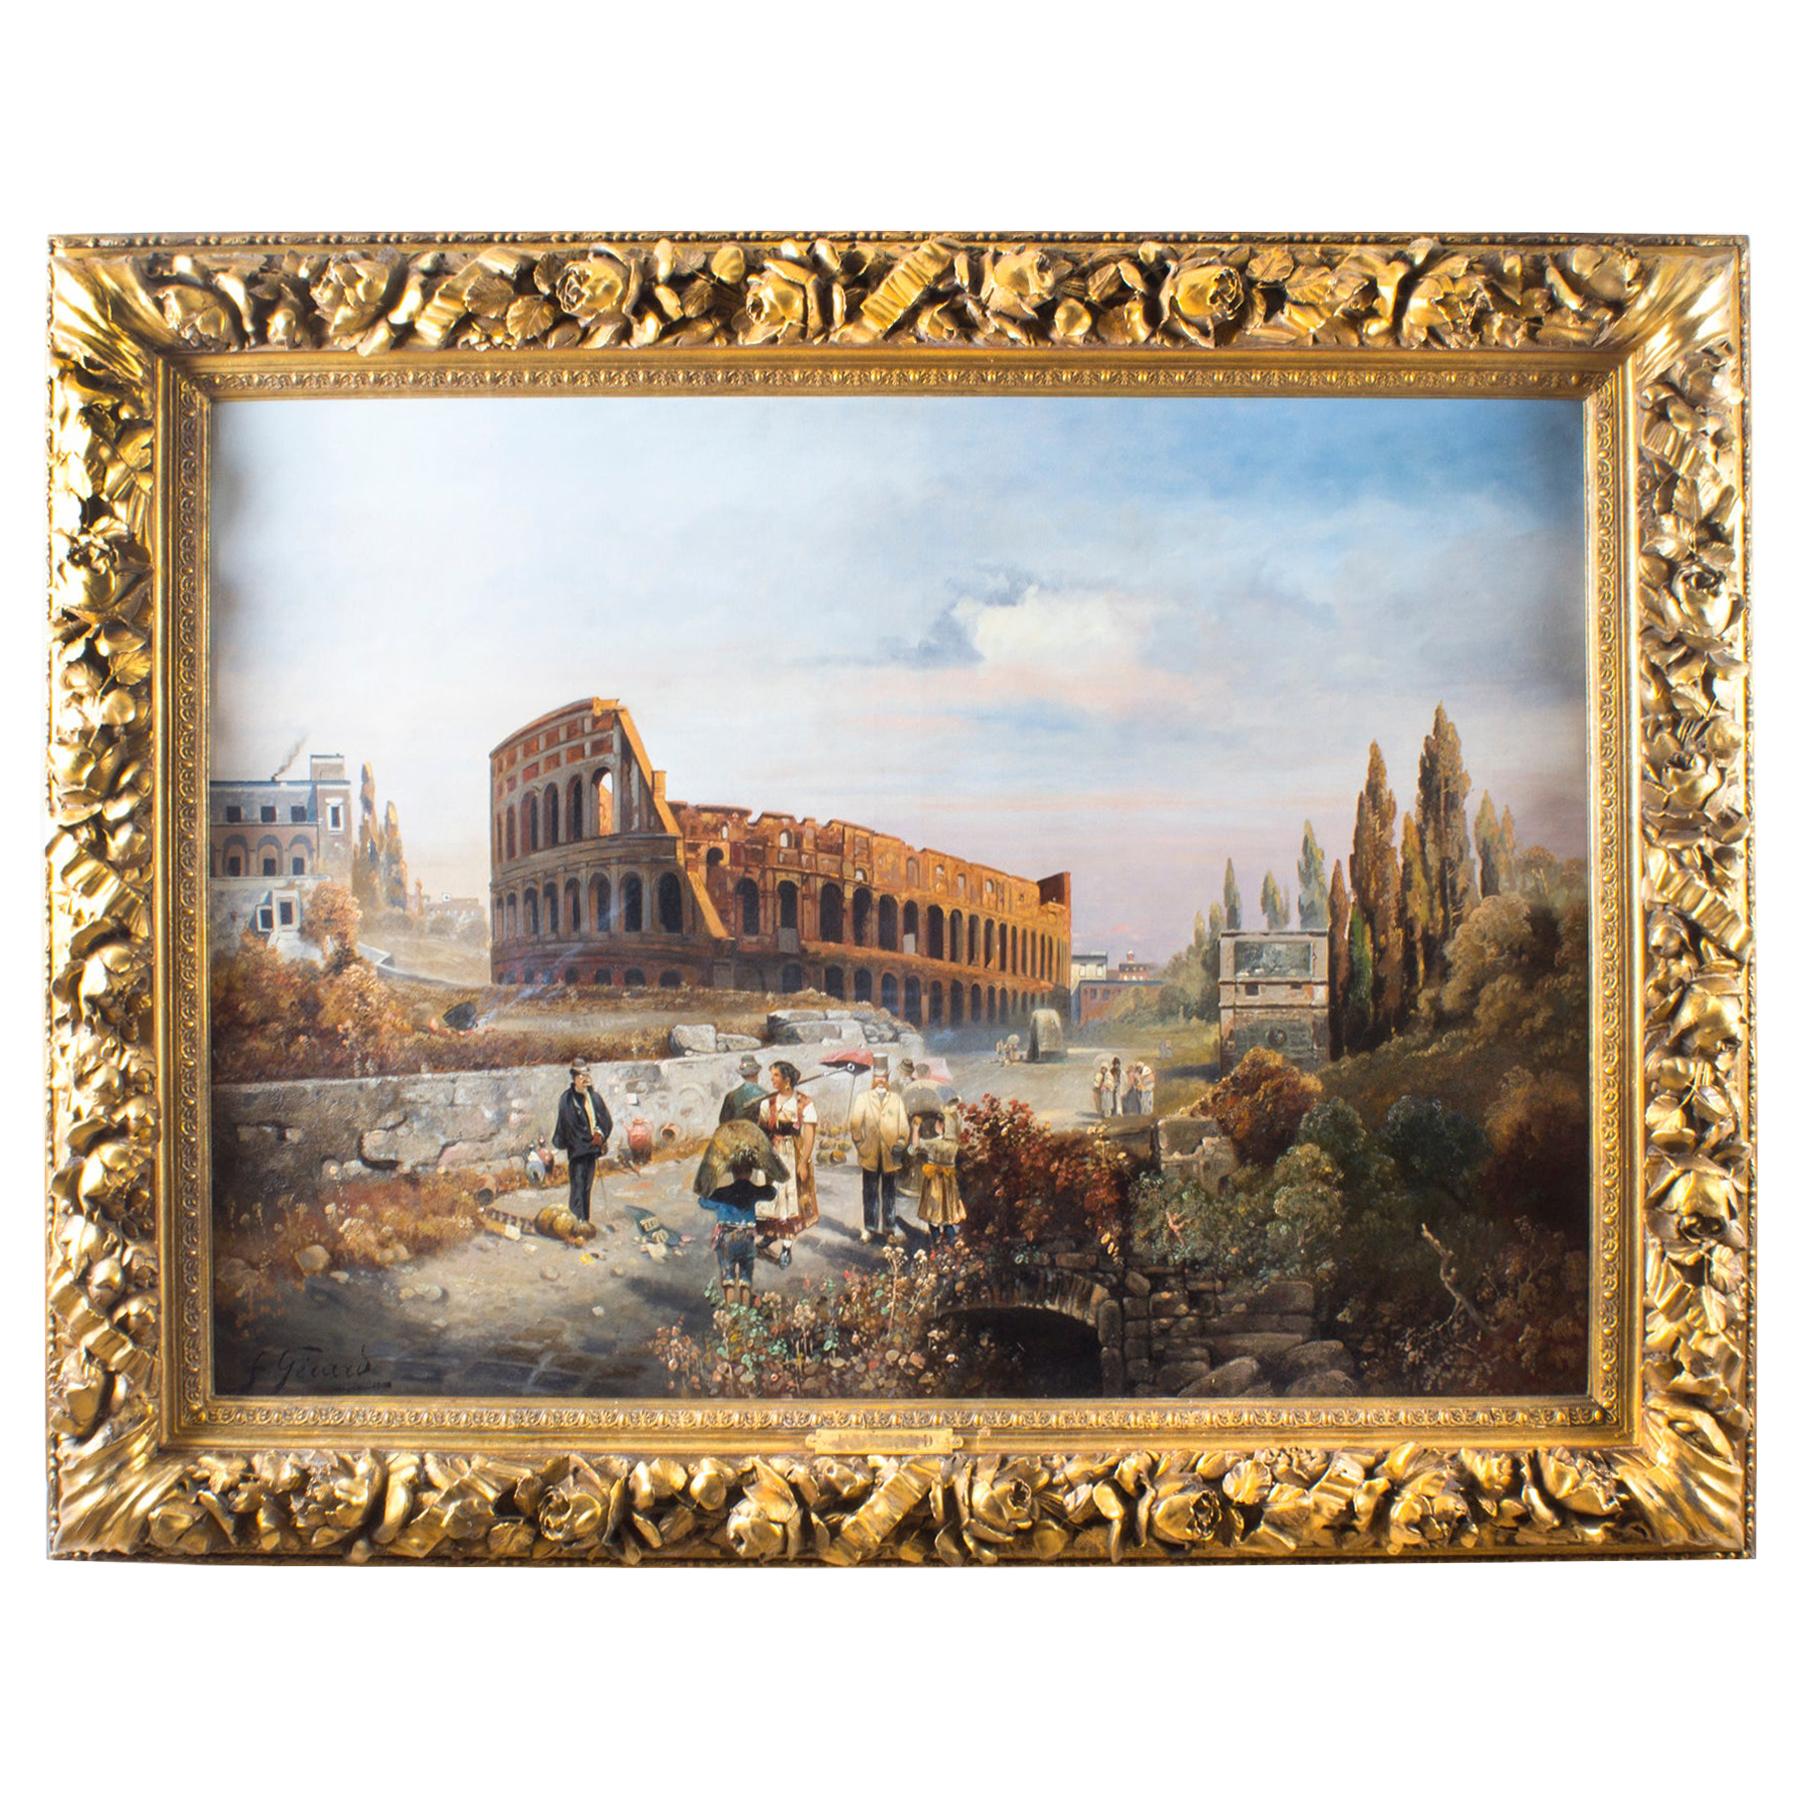 Antique Oil Painting François Gérard 1770 - 1837 of The Colosseum, 19th Century